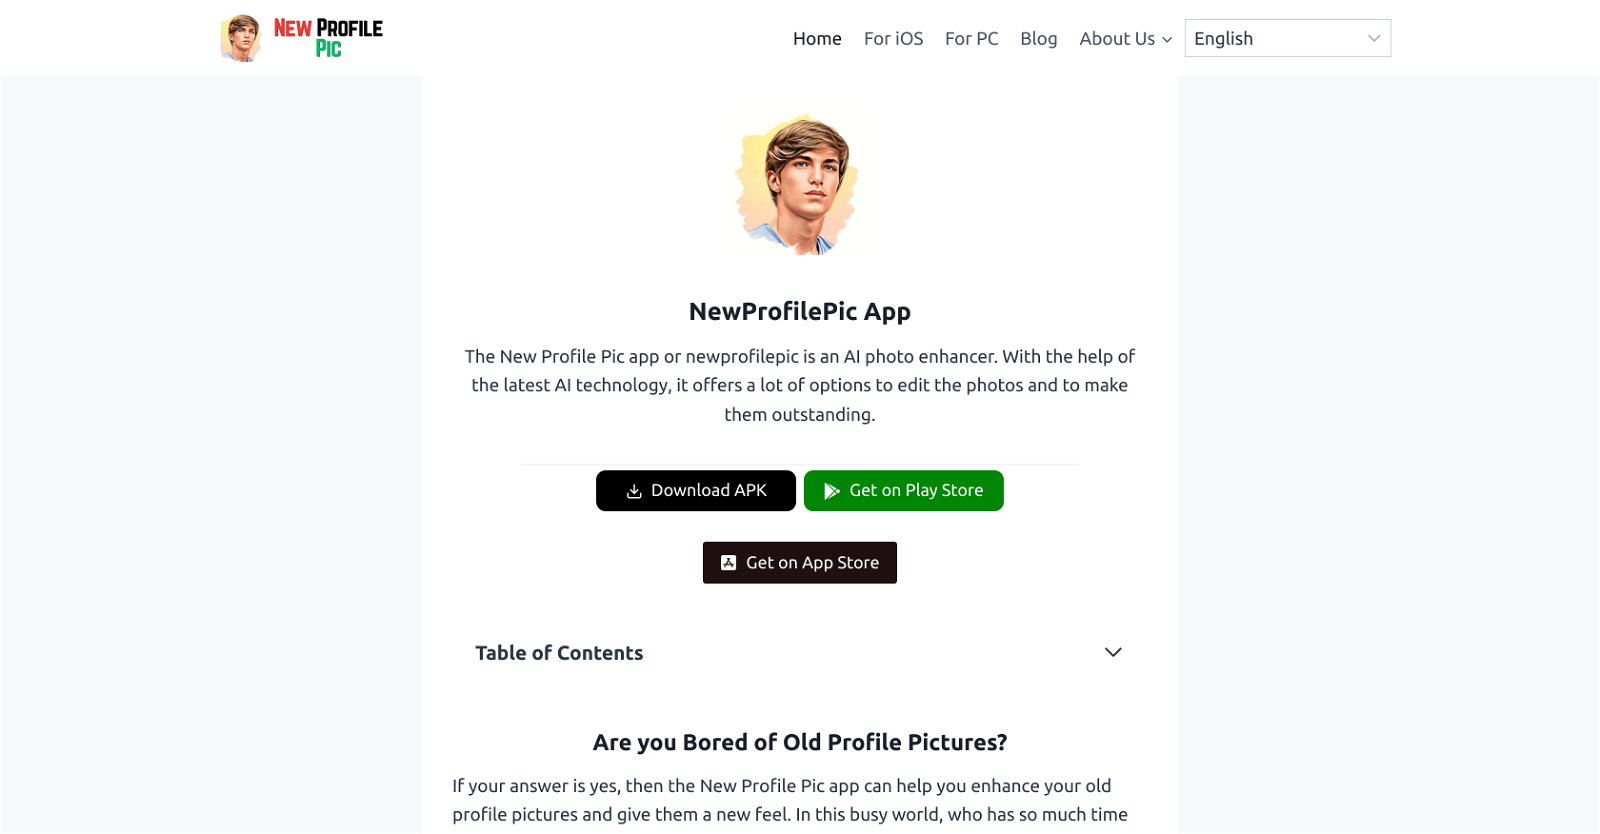 NewProfilePic App website